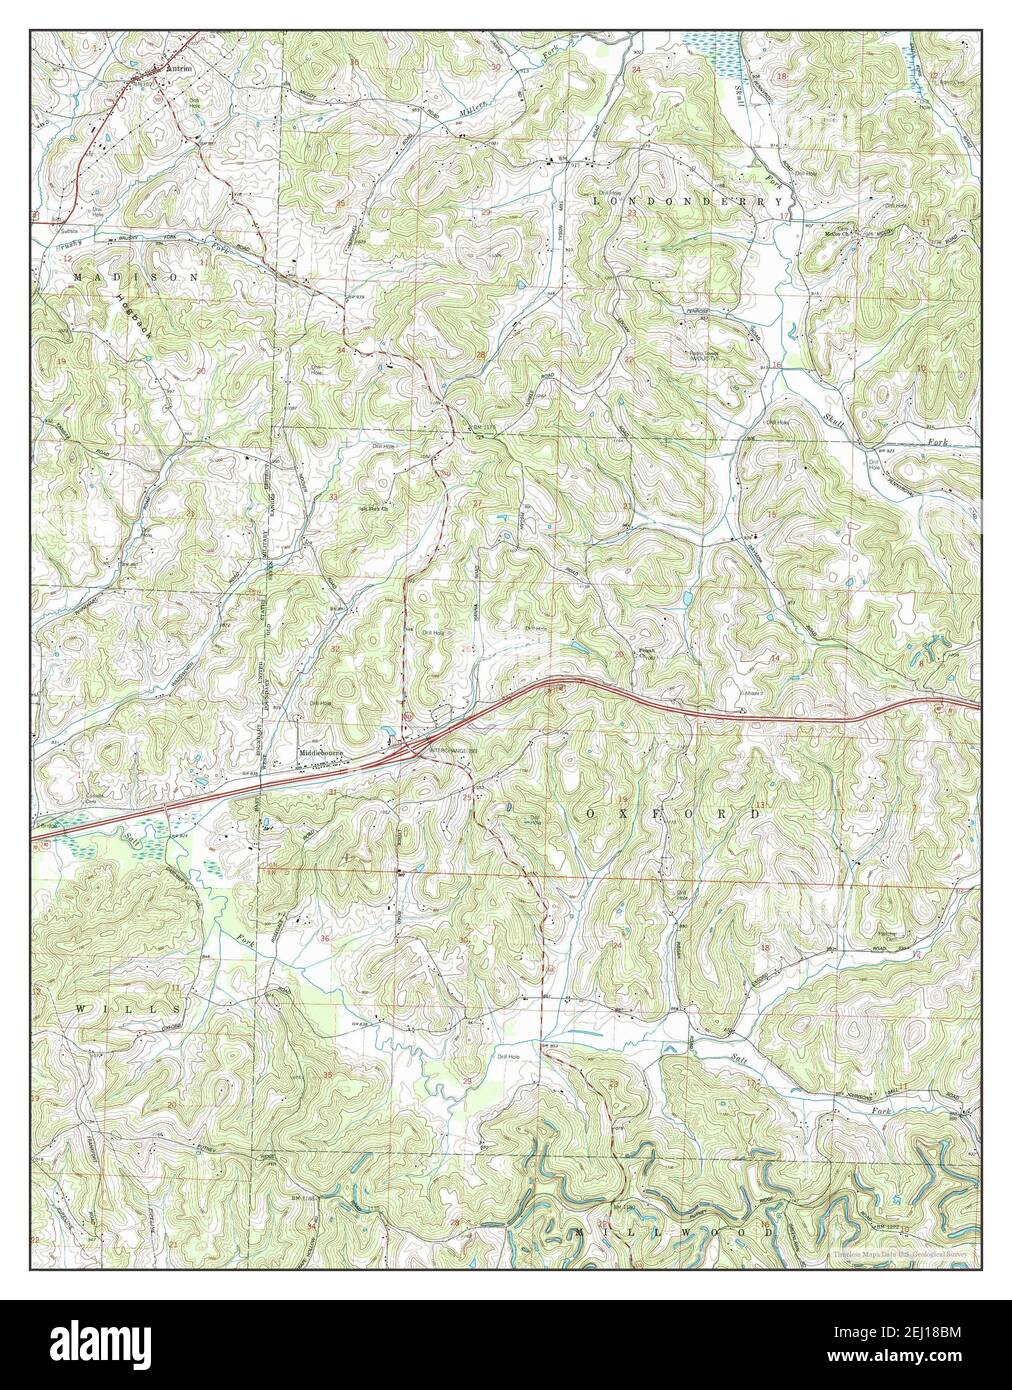 Antrim, Ohio, Karte 1993, 1:24000, Vereinigte Staaten von Amerika von Timeless Maps, Daten U.S. Geological Survey Stockfoto